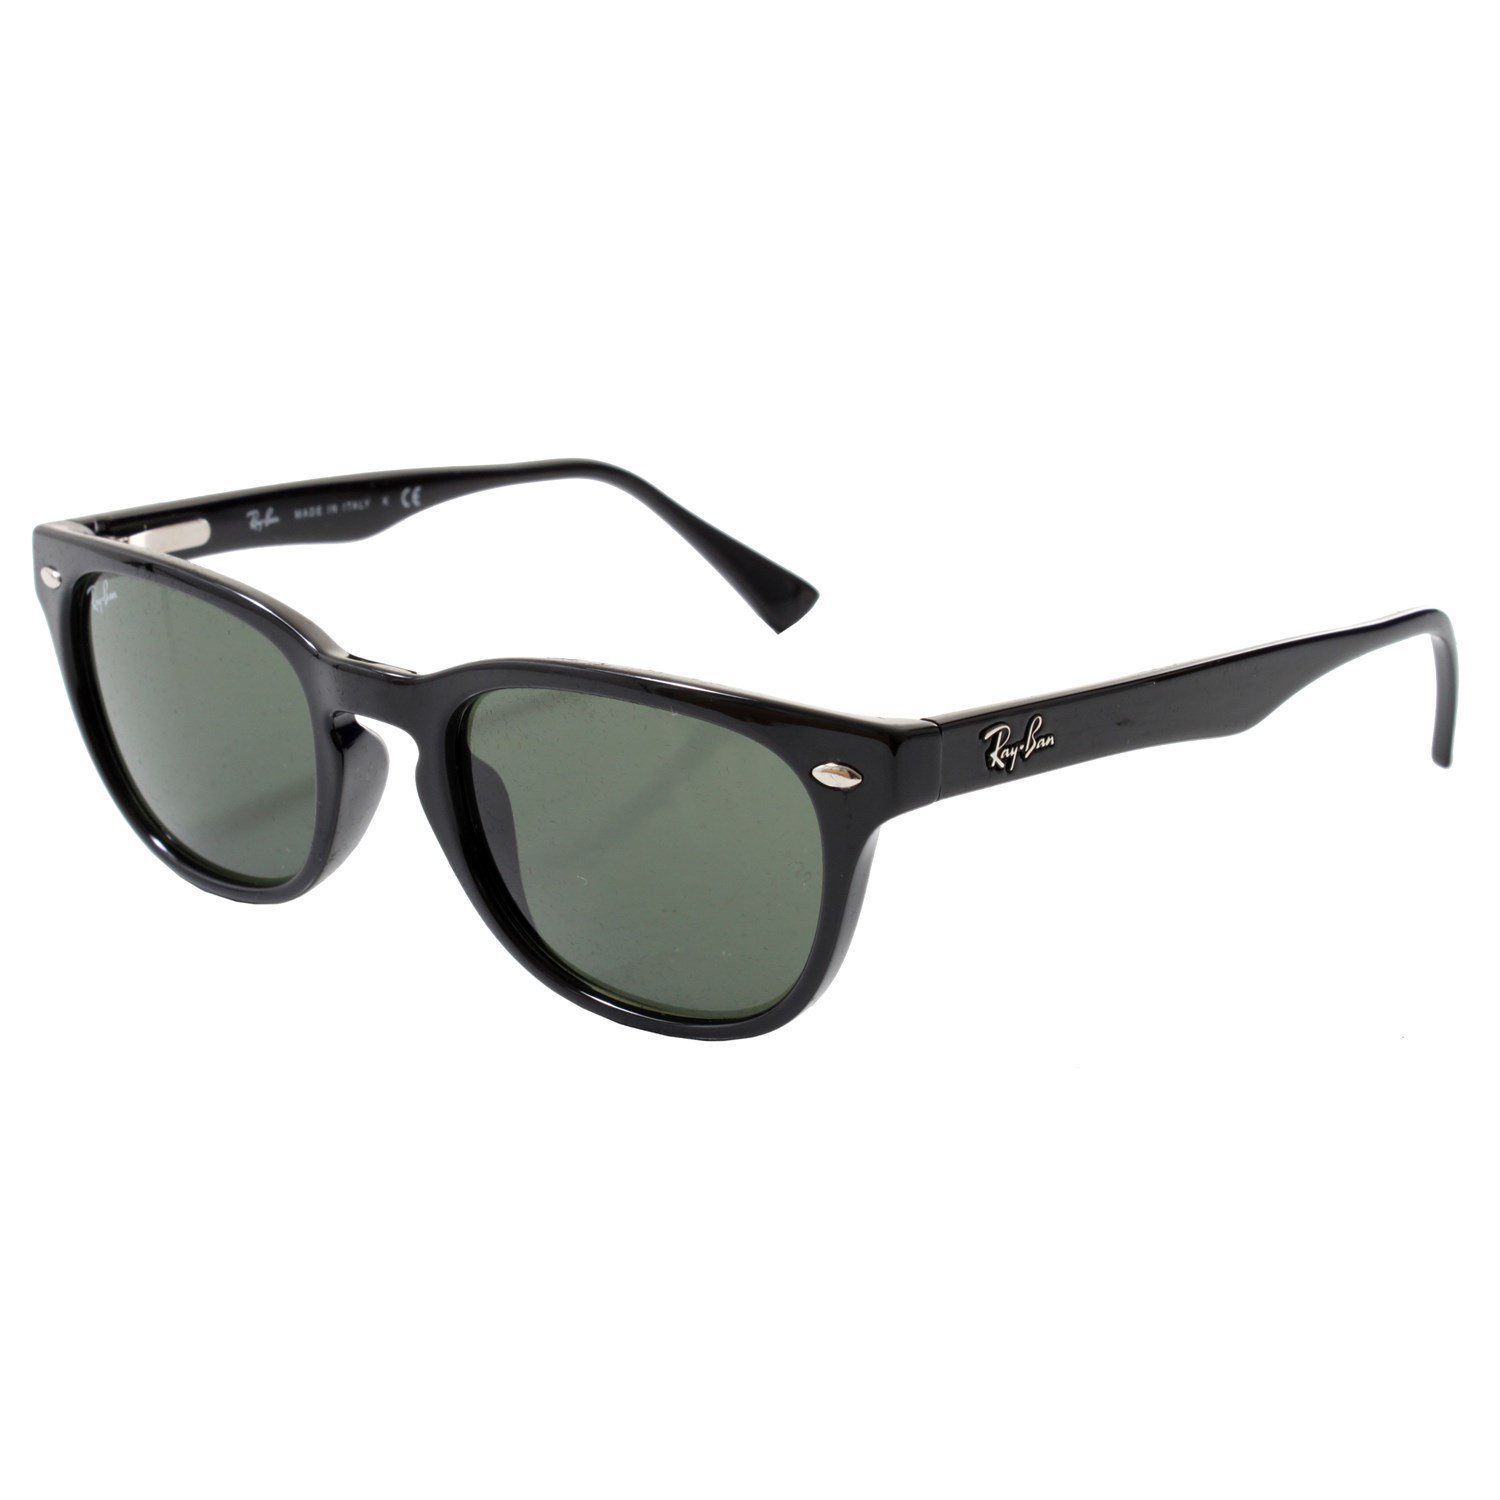 rb4140 sunglasses